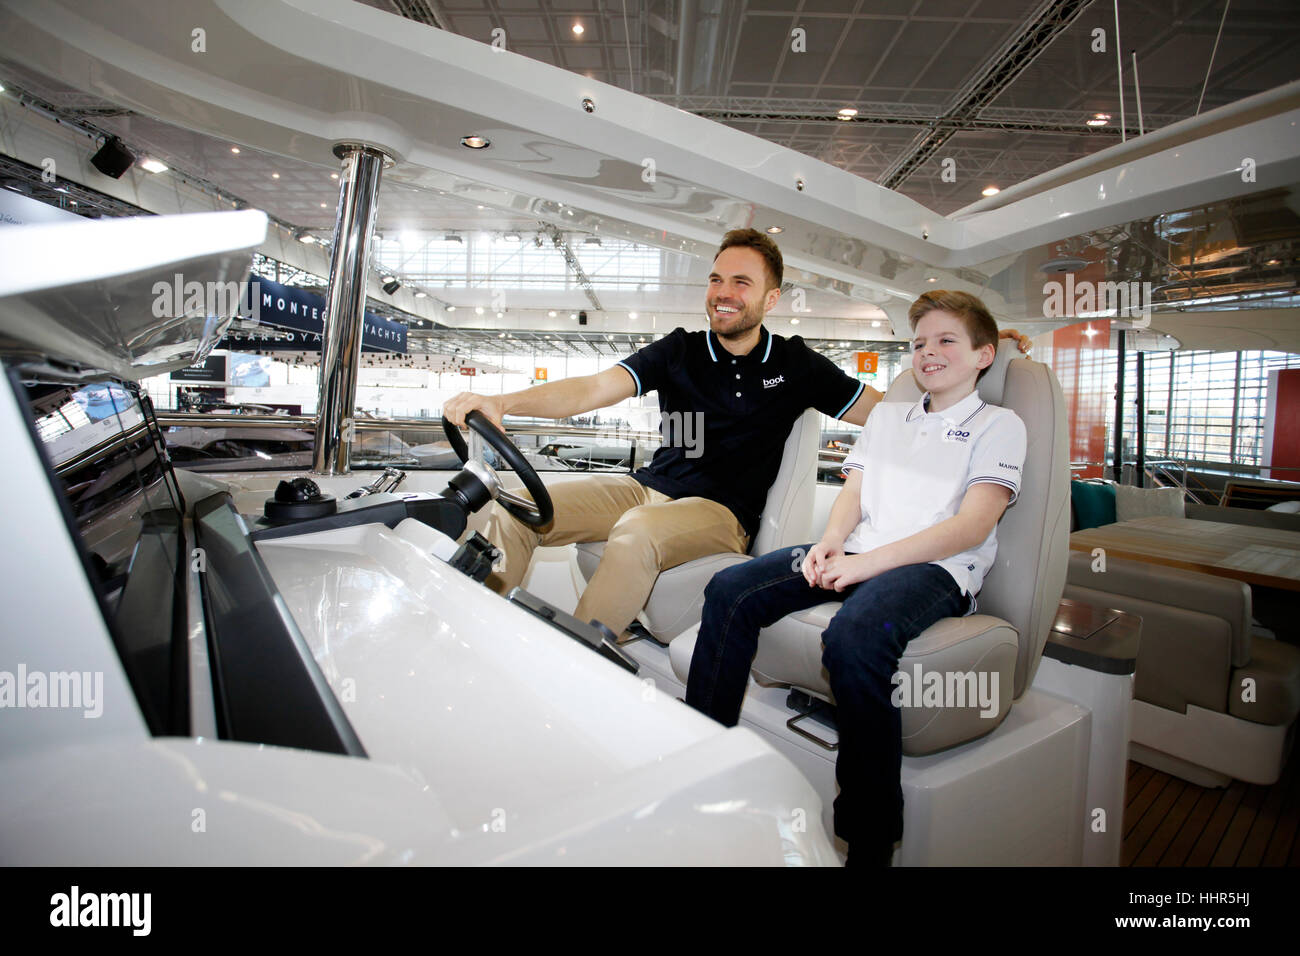 Boot Düsseldorf 2017 - die weltweit größte Segel- und Wasser Sport-Ausstellung.  Der Star ist die Prinzessin 30M, die größte und teuerste Luxusyacht auf der Messe. Stefan und Daniel (junge) am Lenkrad. Stockfoto